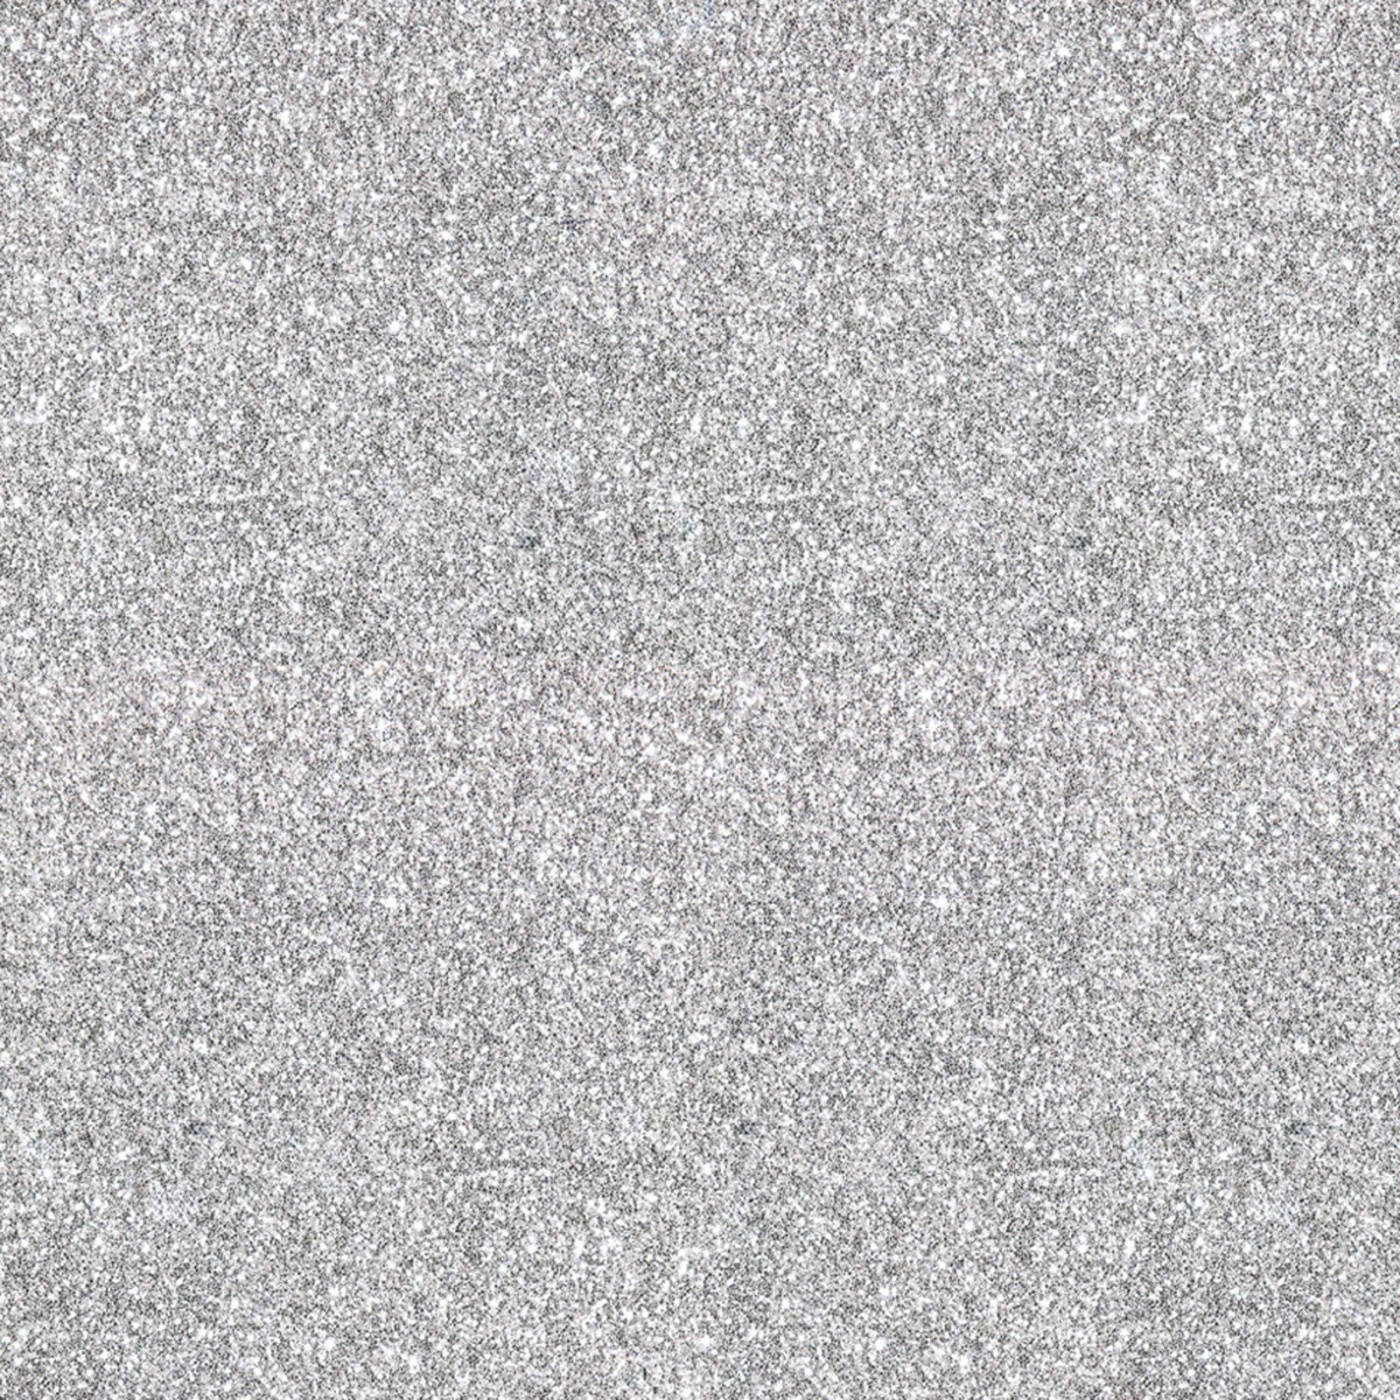 Silver Sparkly Glitter Wallpaper